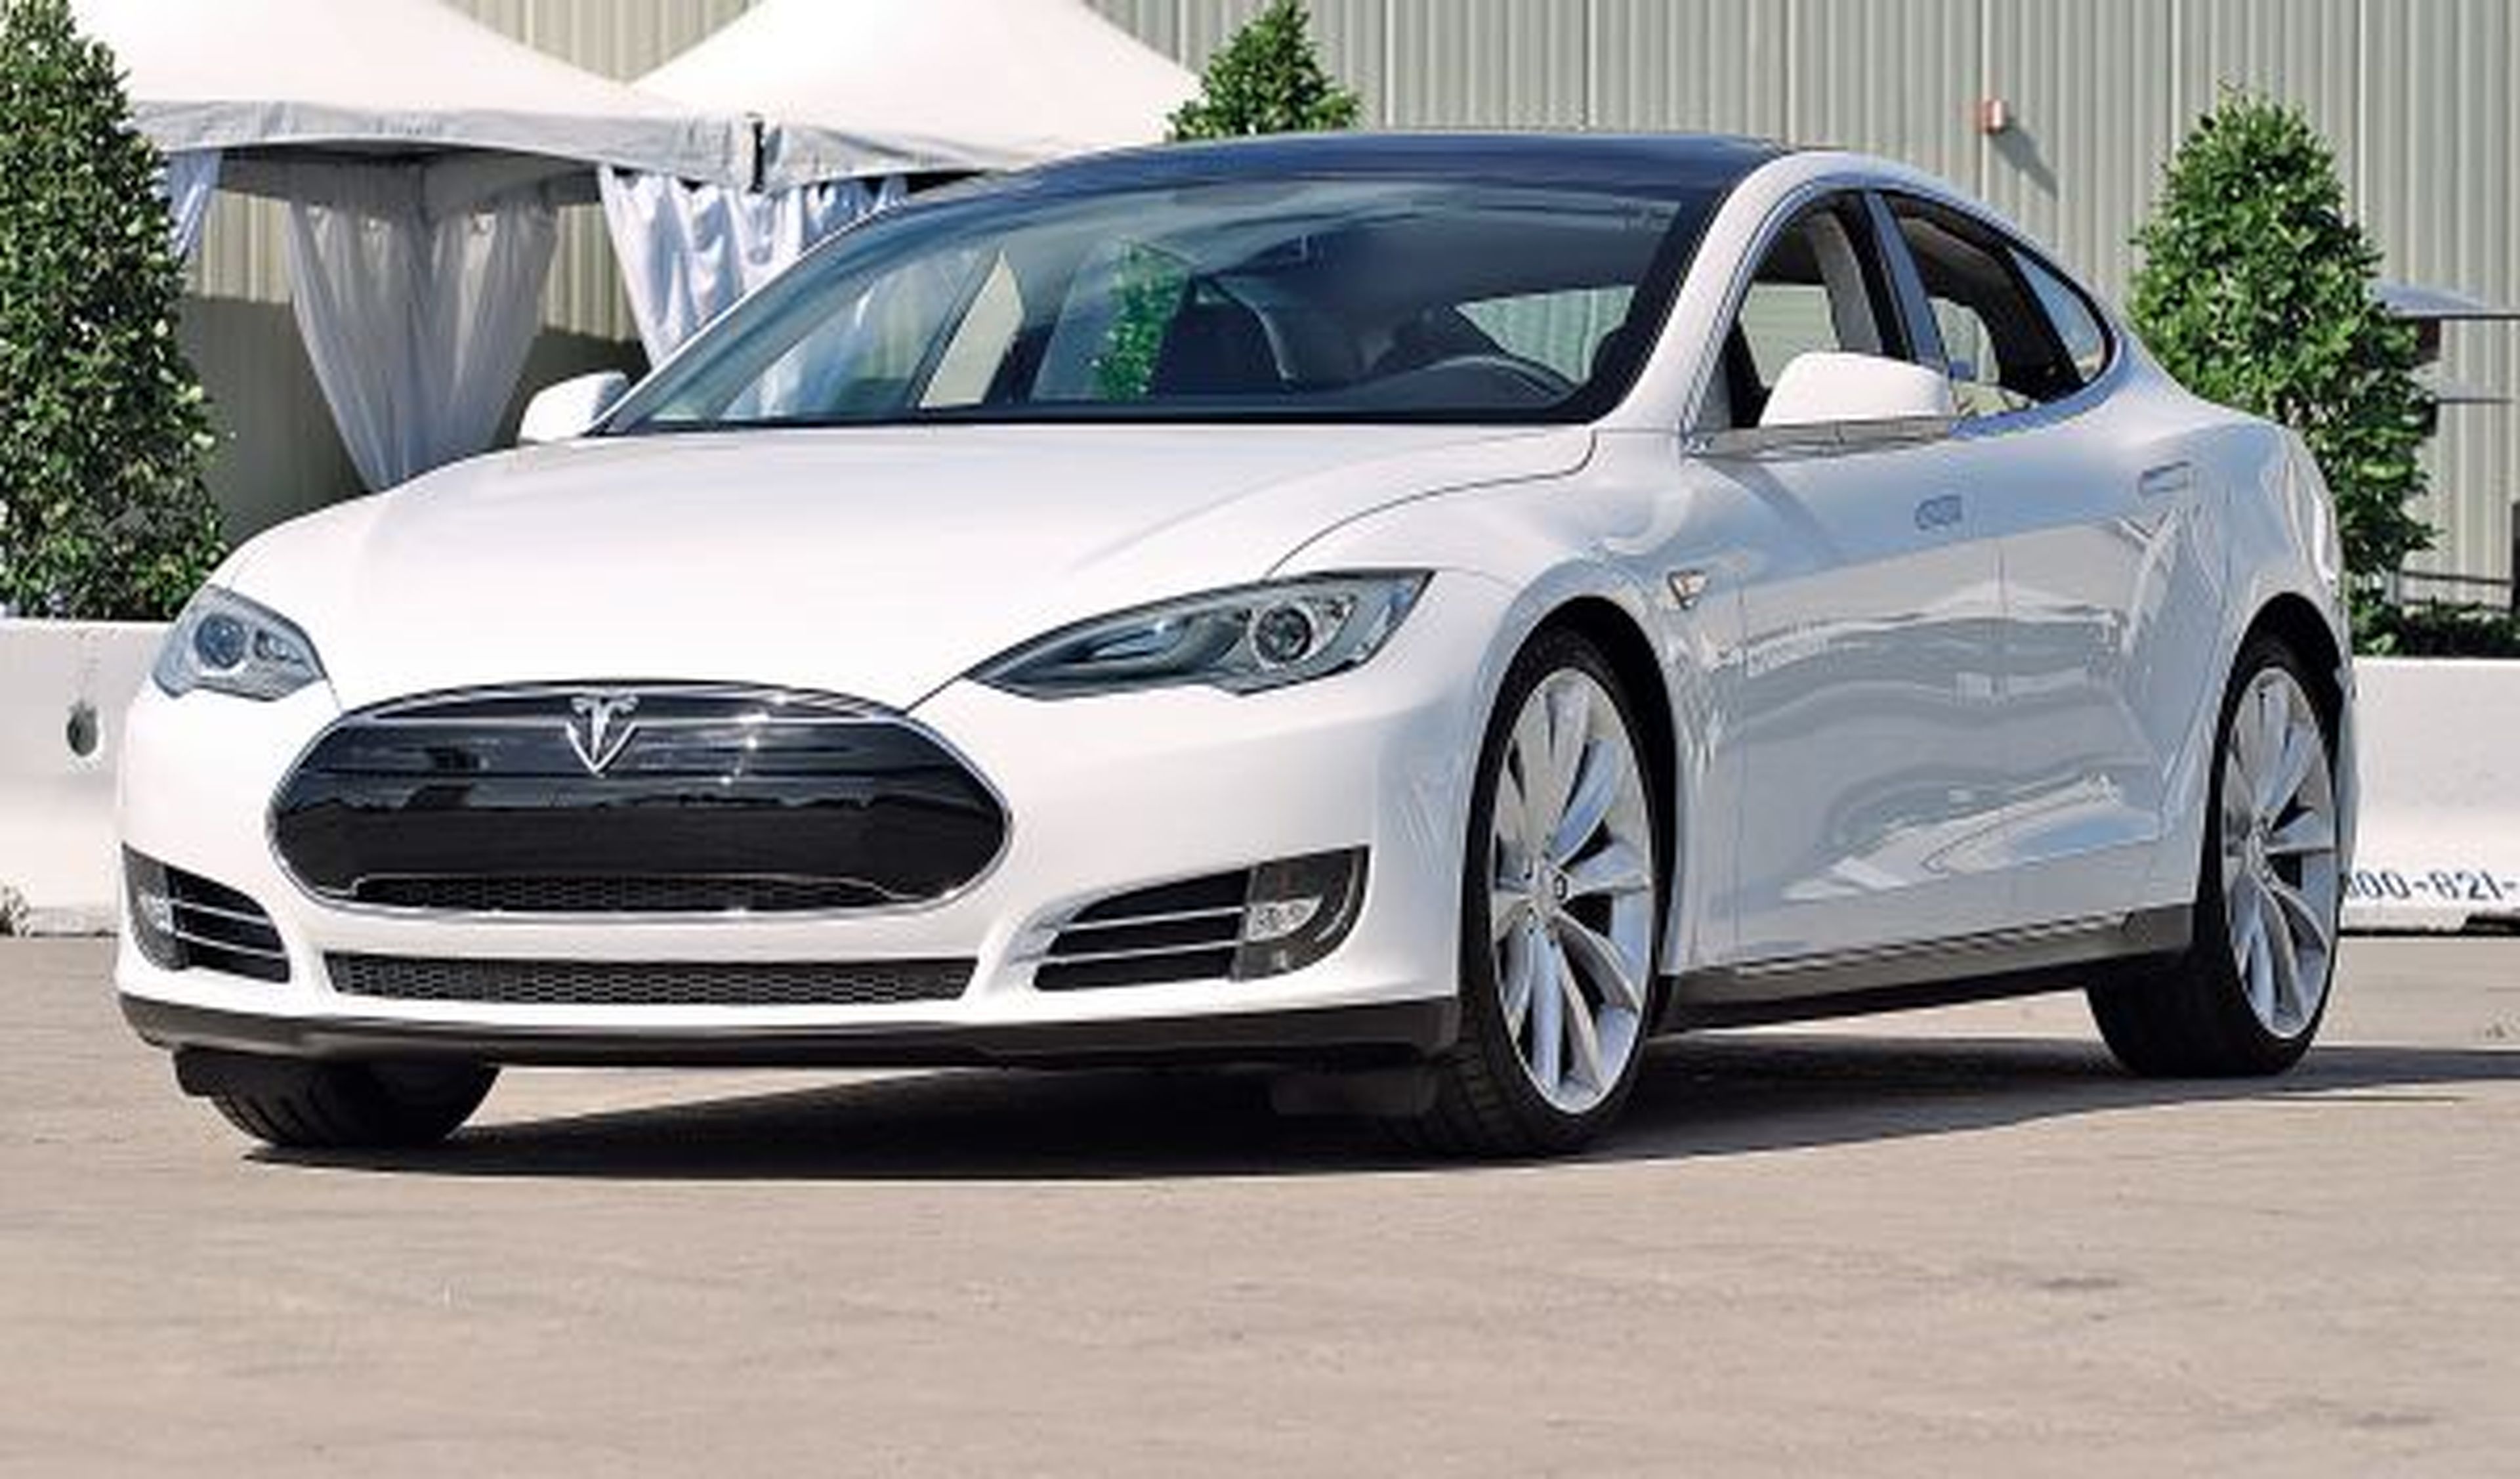 Singapur considera el Model S un coche muy contaminante